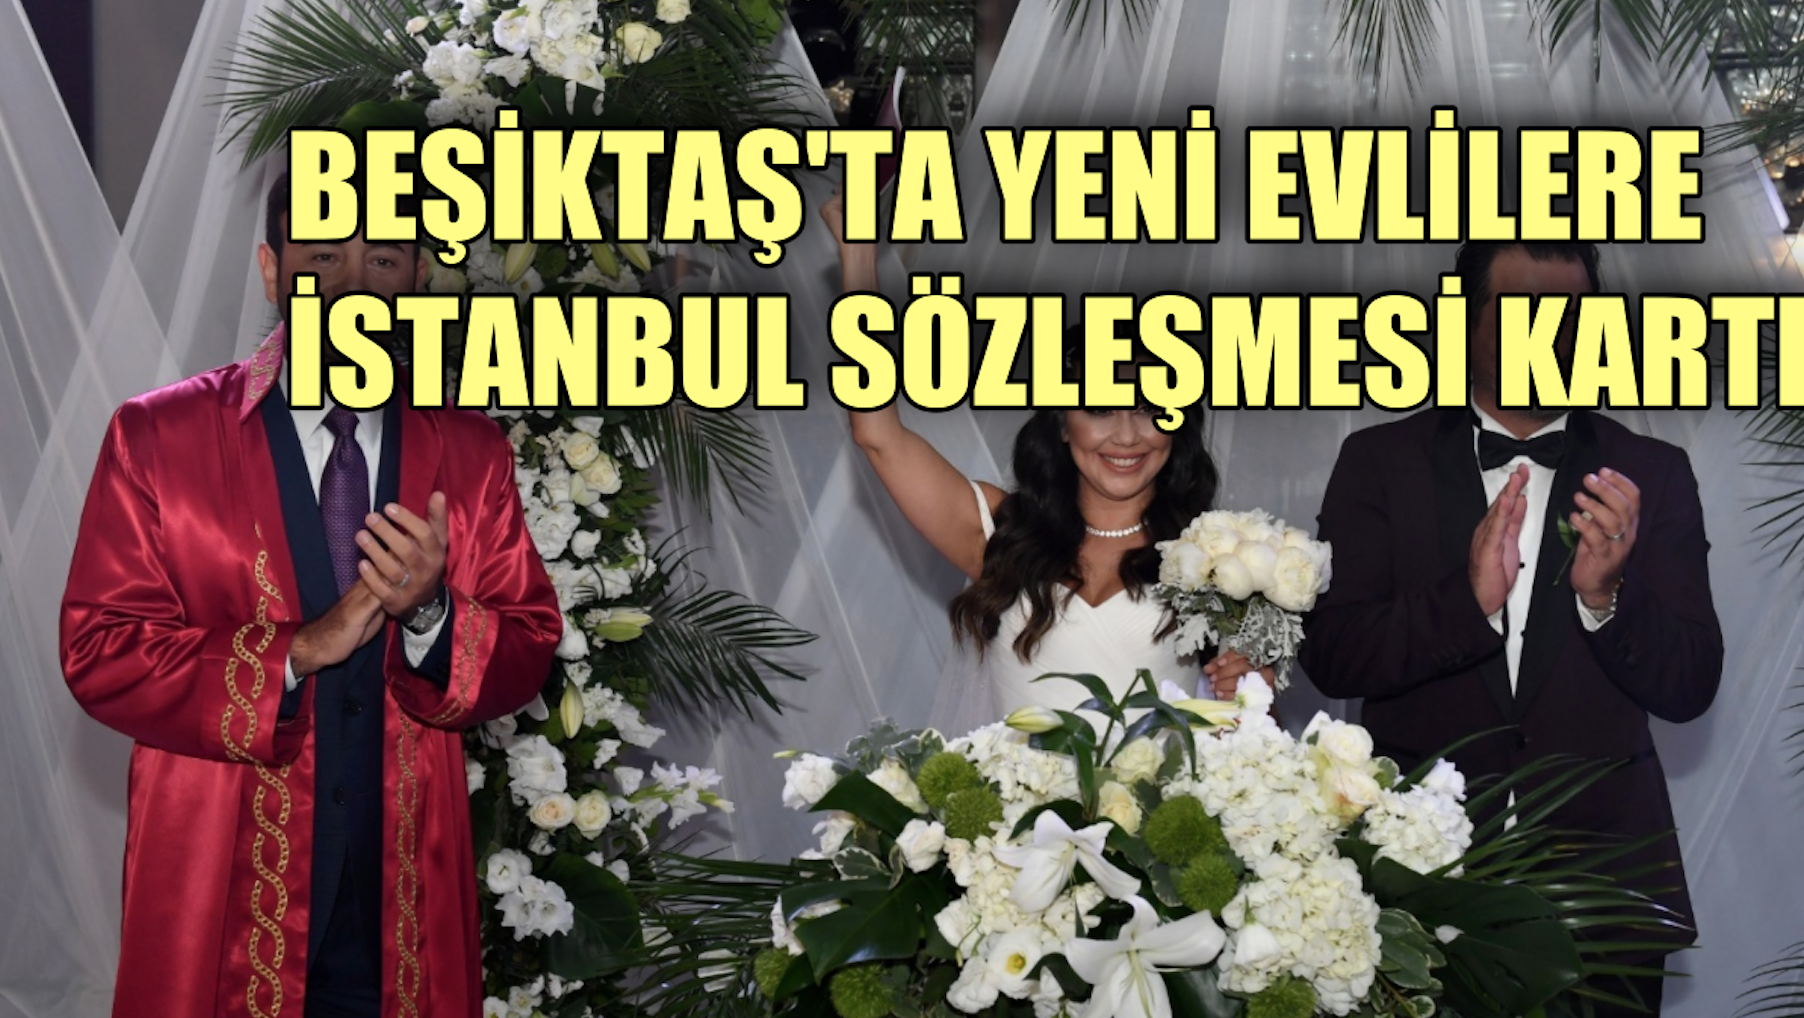 Beşiktaş'ta evlenen çiftlere İstanbul Sözleşmesi kartı